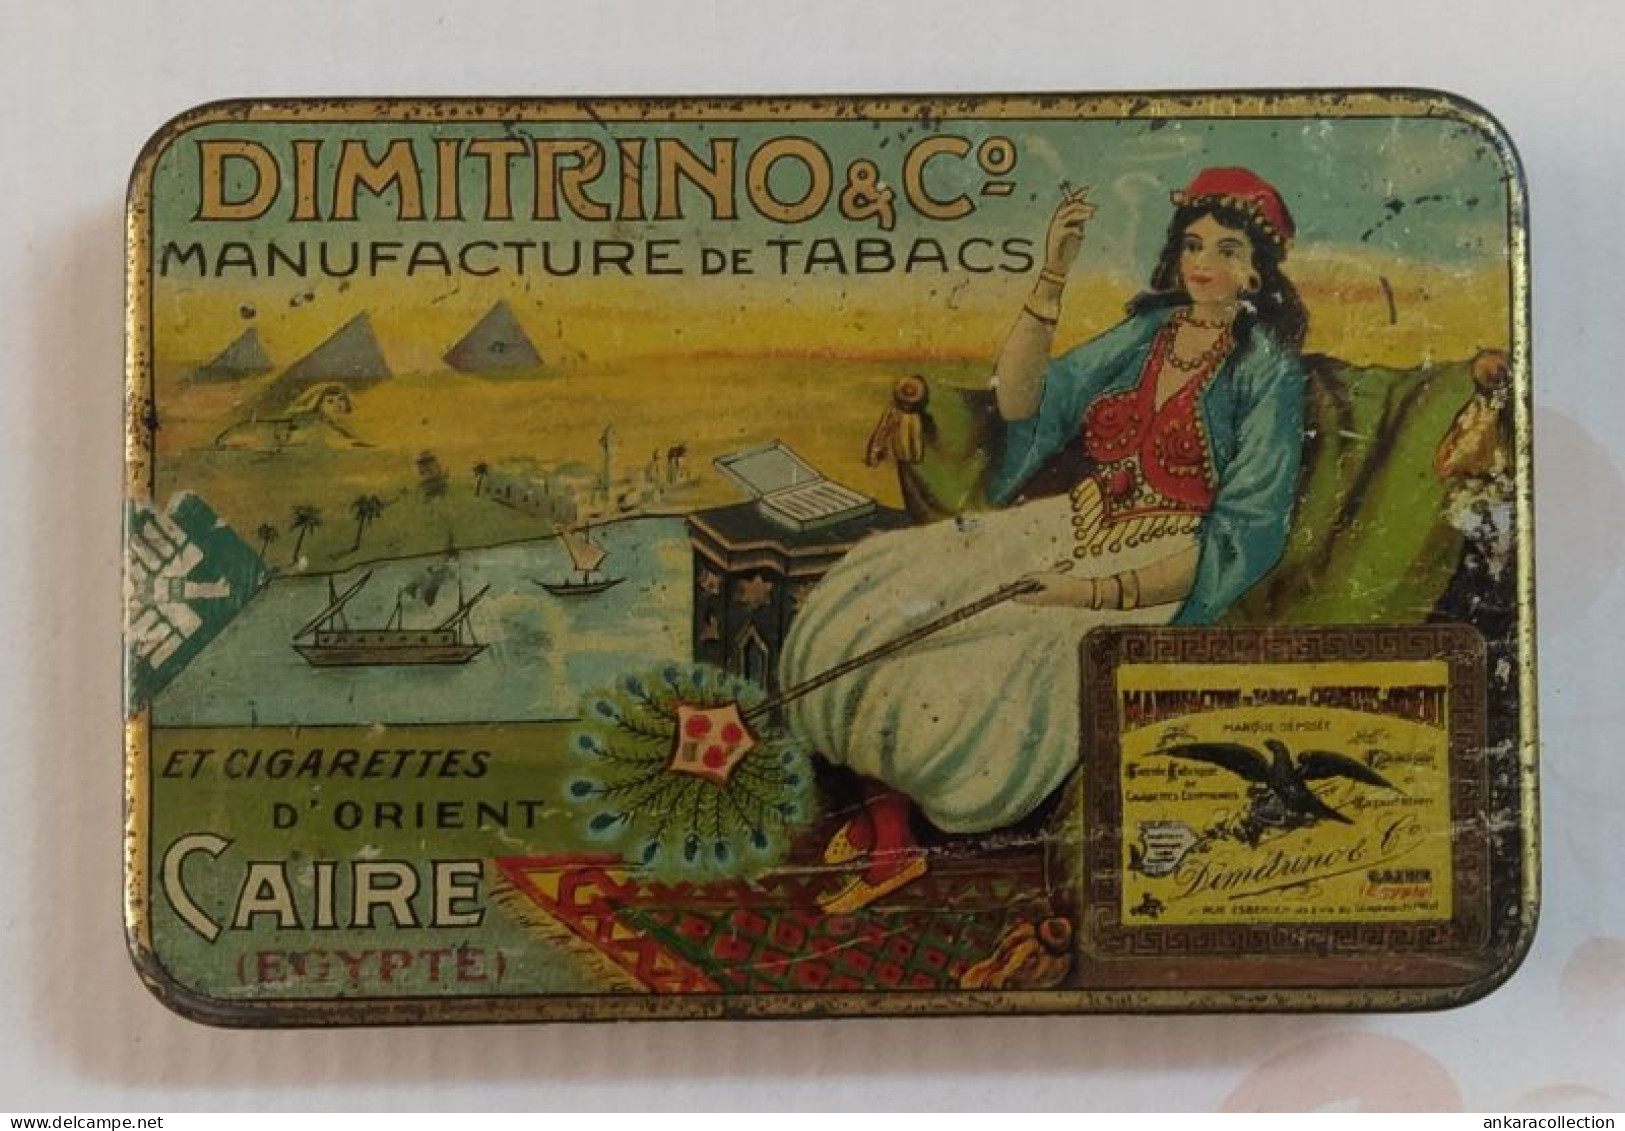 AC - DIMITRINO Co MANUFACTURE DE TABACS CAIRE EGYPTE CIGARETTE - TOBACCO EMPTY VINTAGE TIN BOX - Boites à Tabac Vides